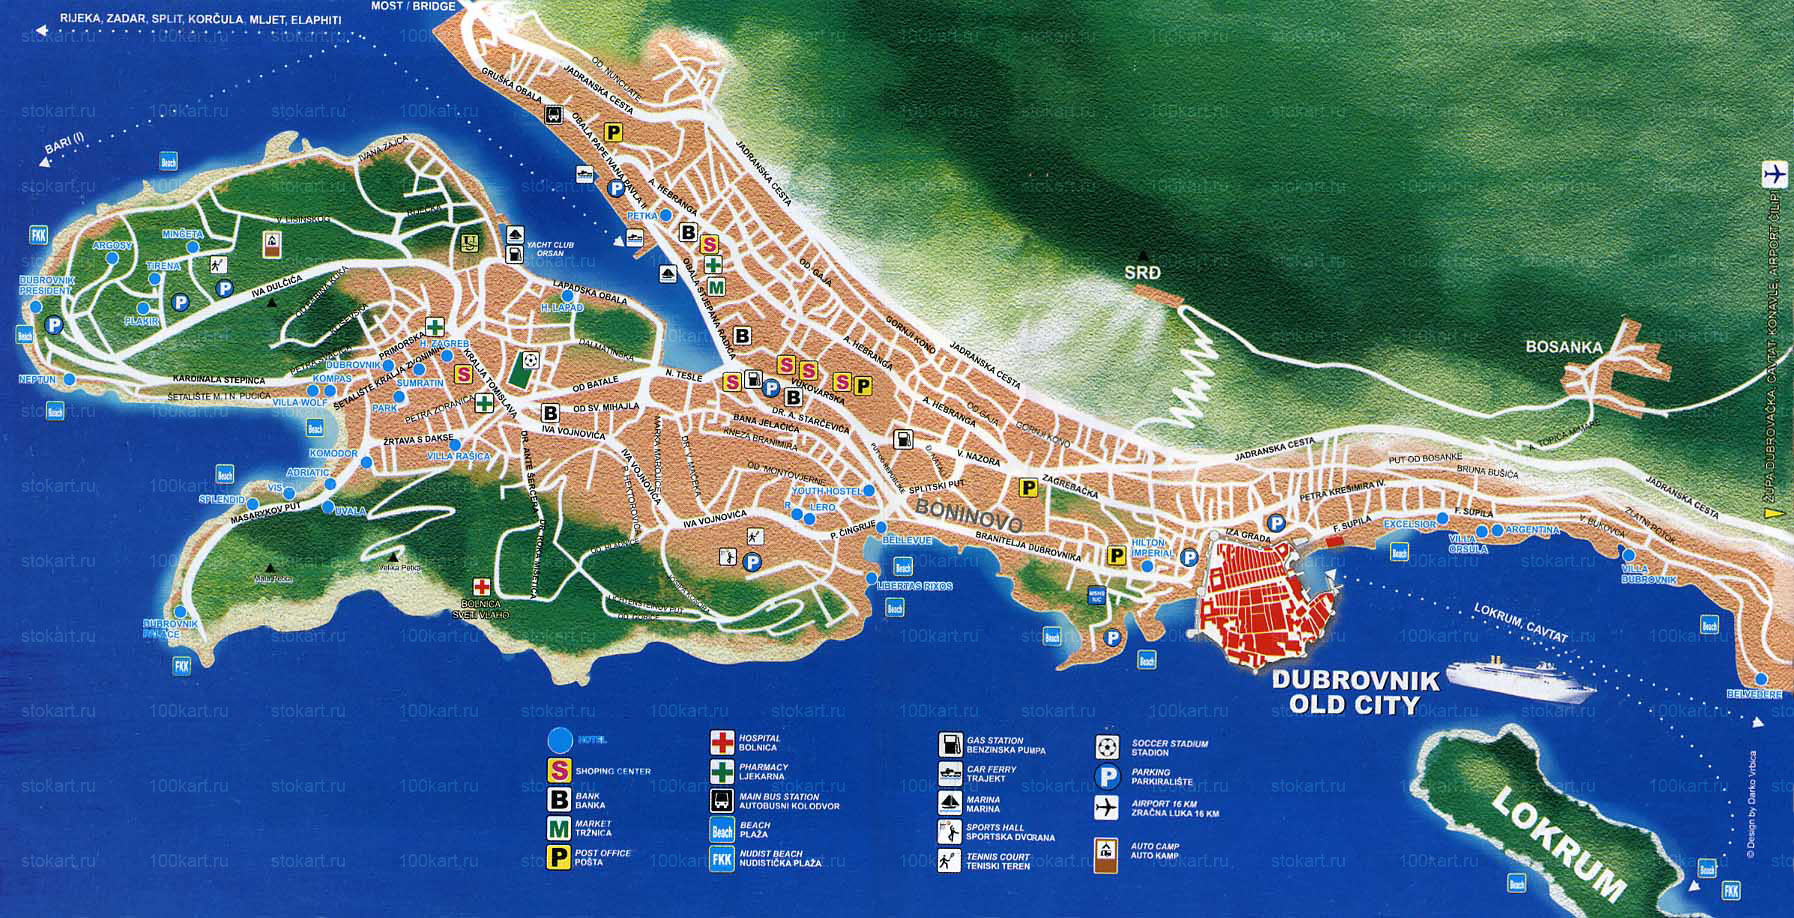 Croatia_Dubrovnik_map_1.jpg